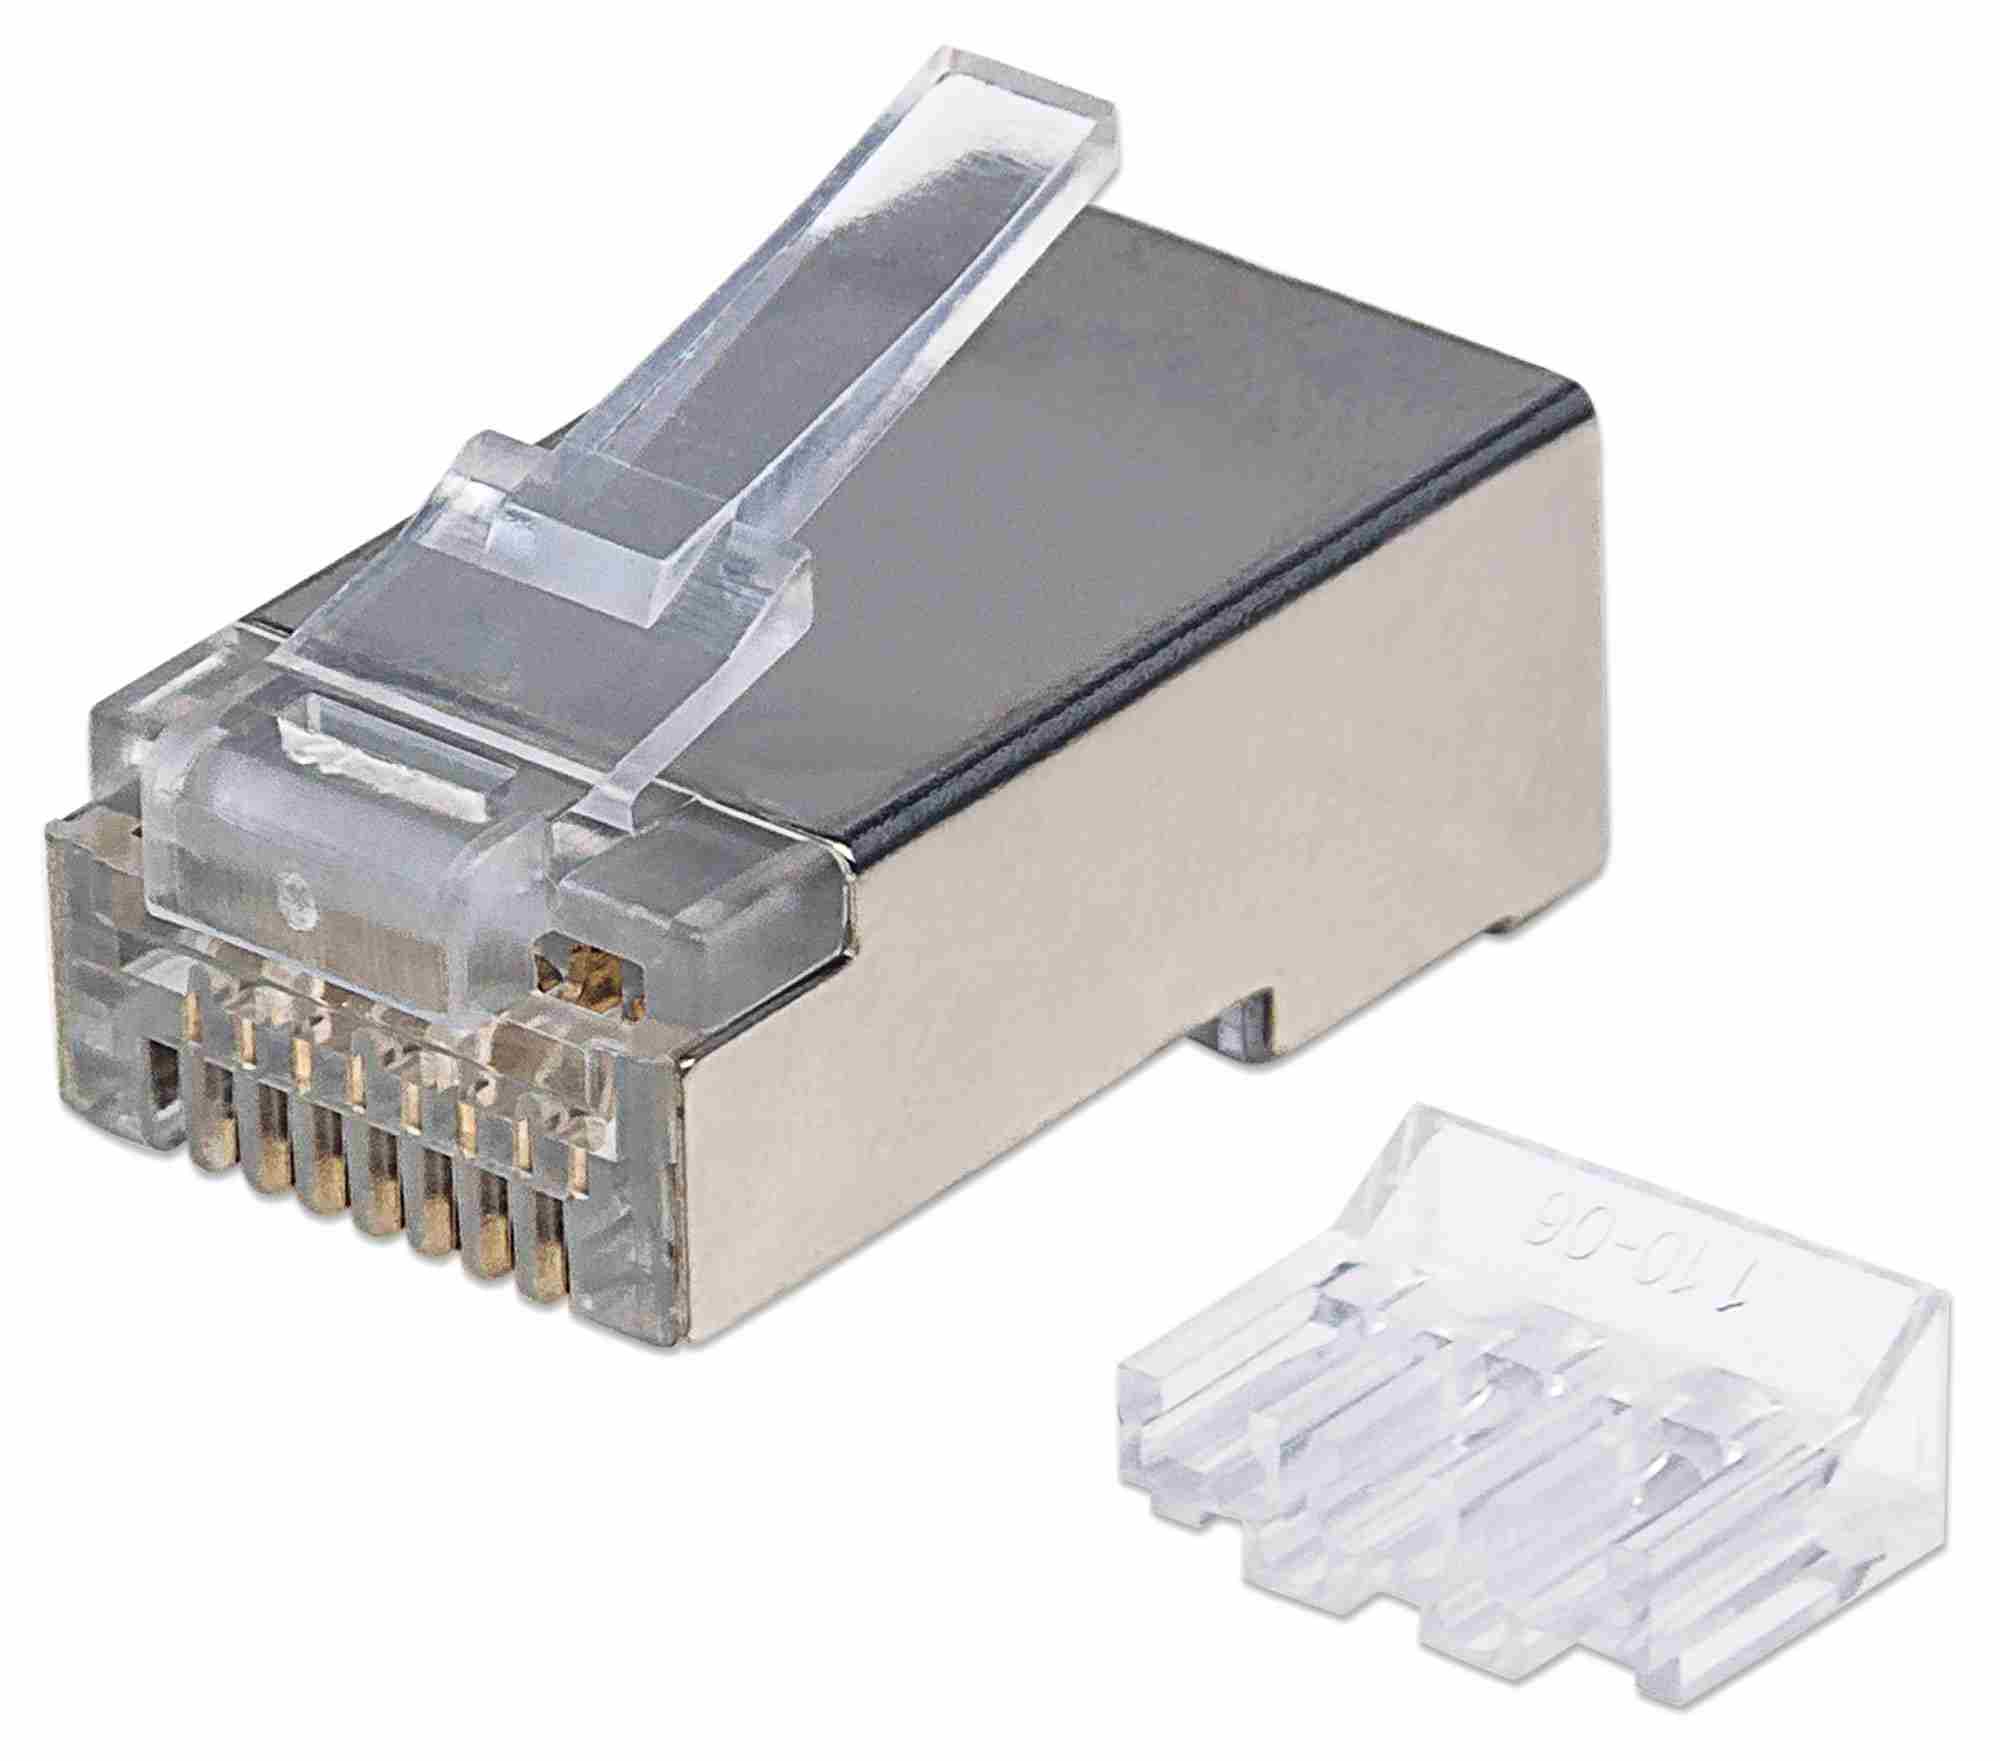 Intellinet konektor RJ45,  Cat6A,  tienený STP,  15µ,  drôt,  90 ks v balení1 